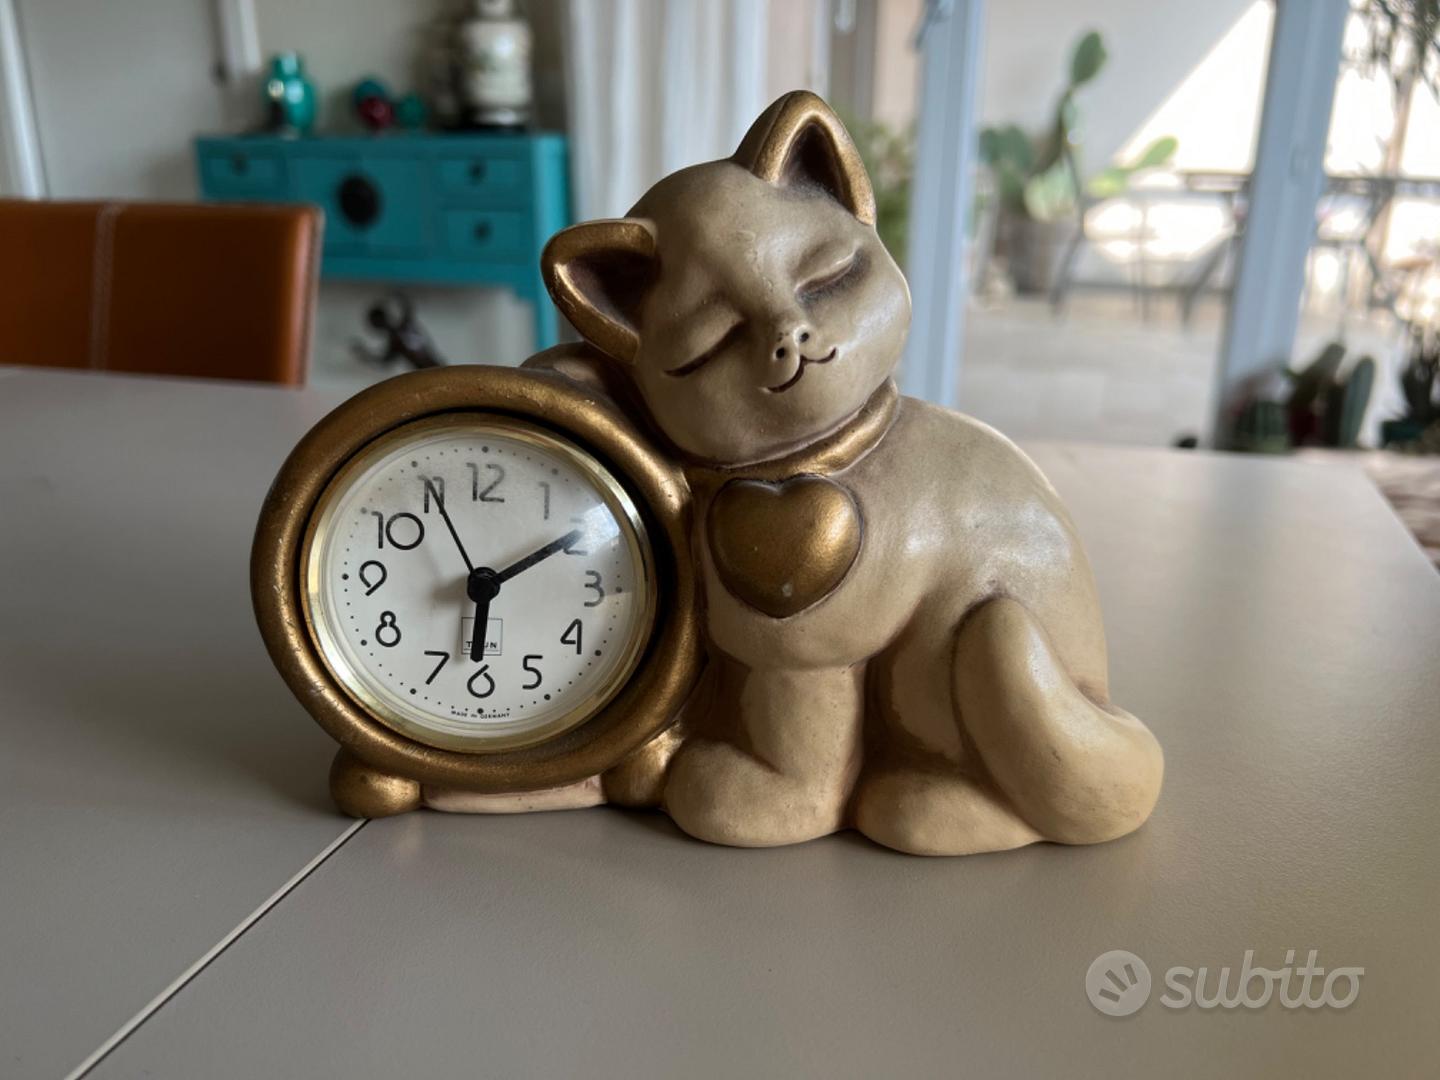 thun gatto con cuore oro e orologio da tavolo - Arredamento e